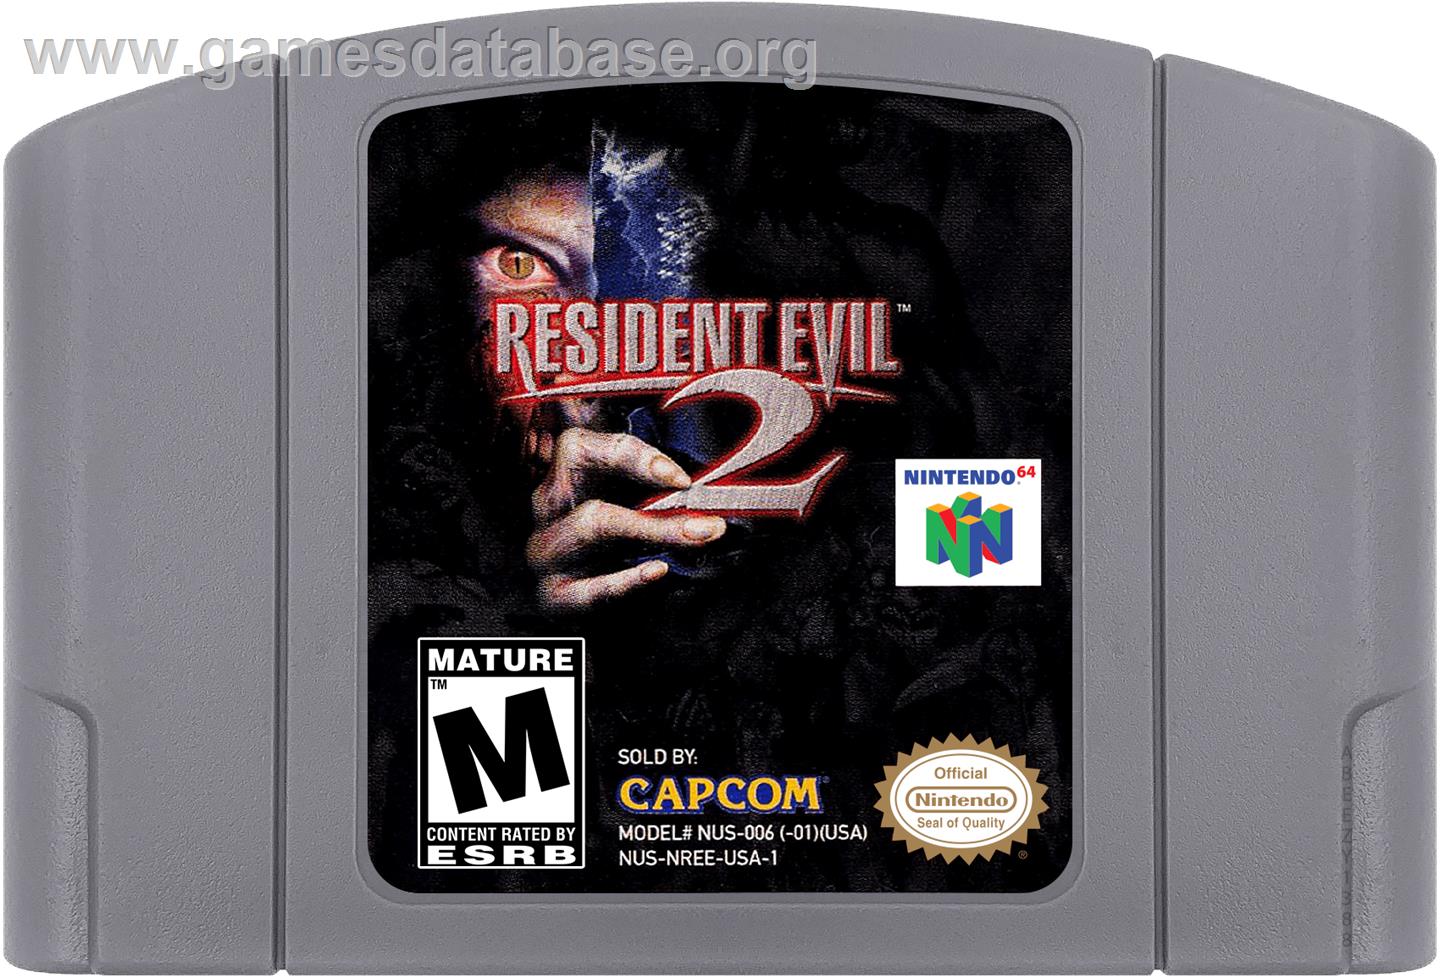 Resident Evil 2 - Nintendo N64 - Artwork - Cartridge